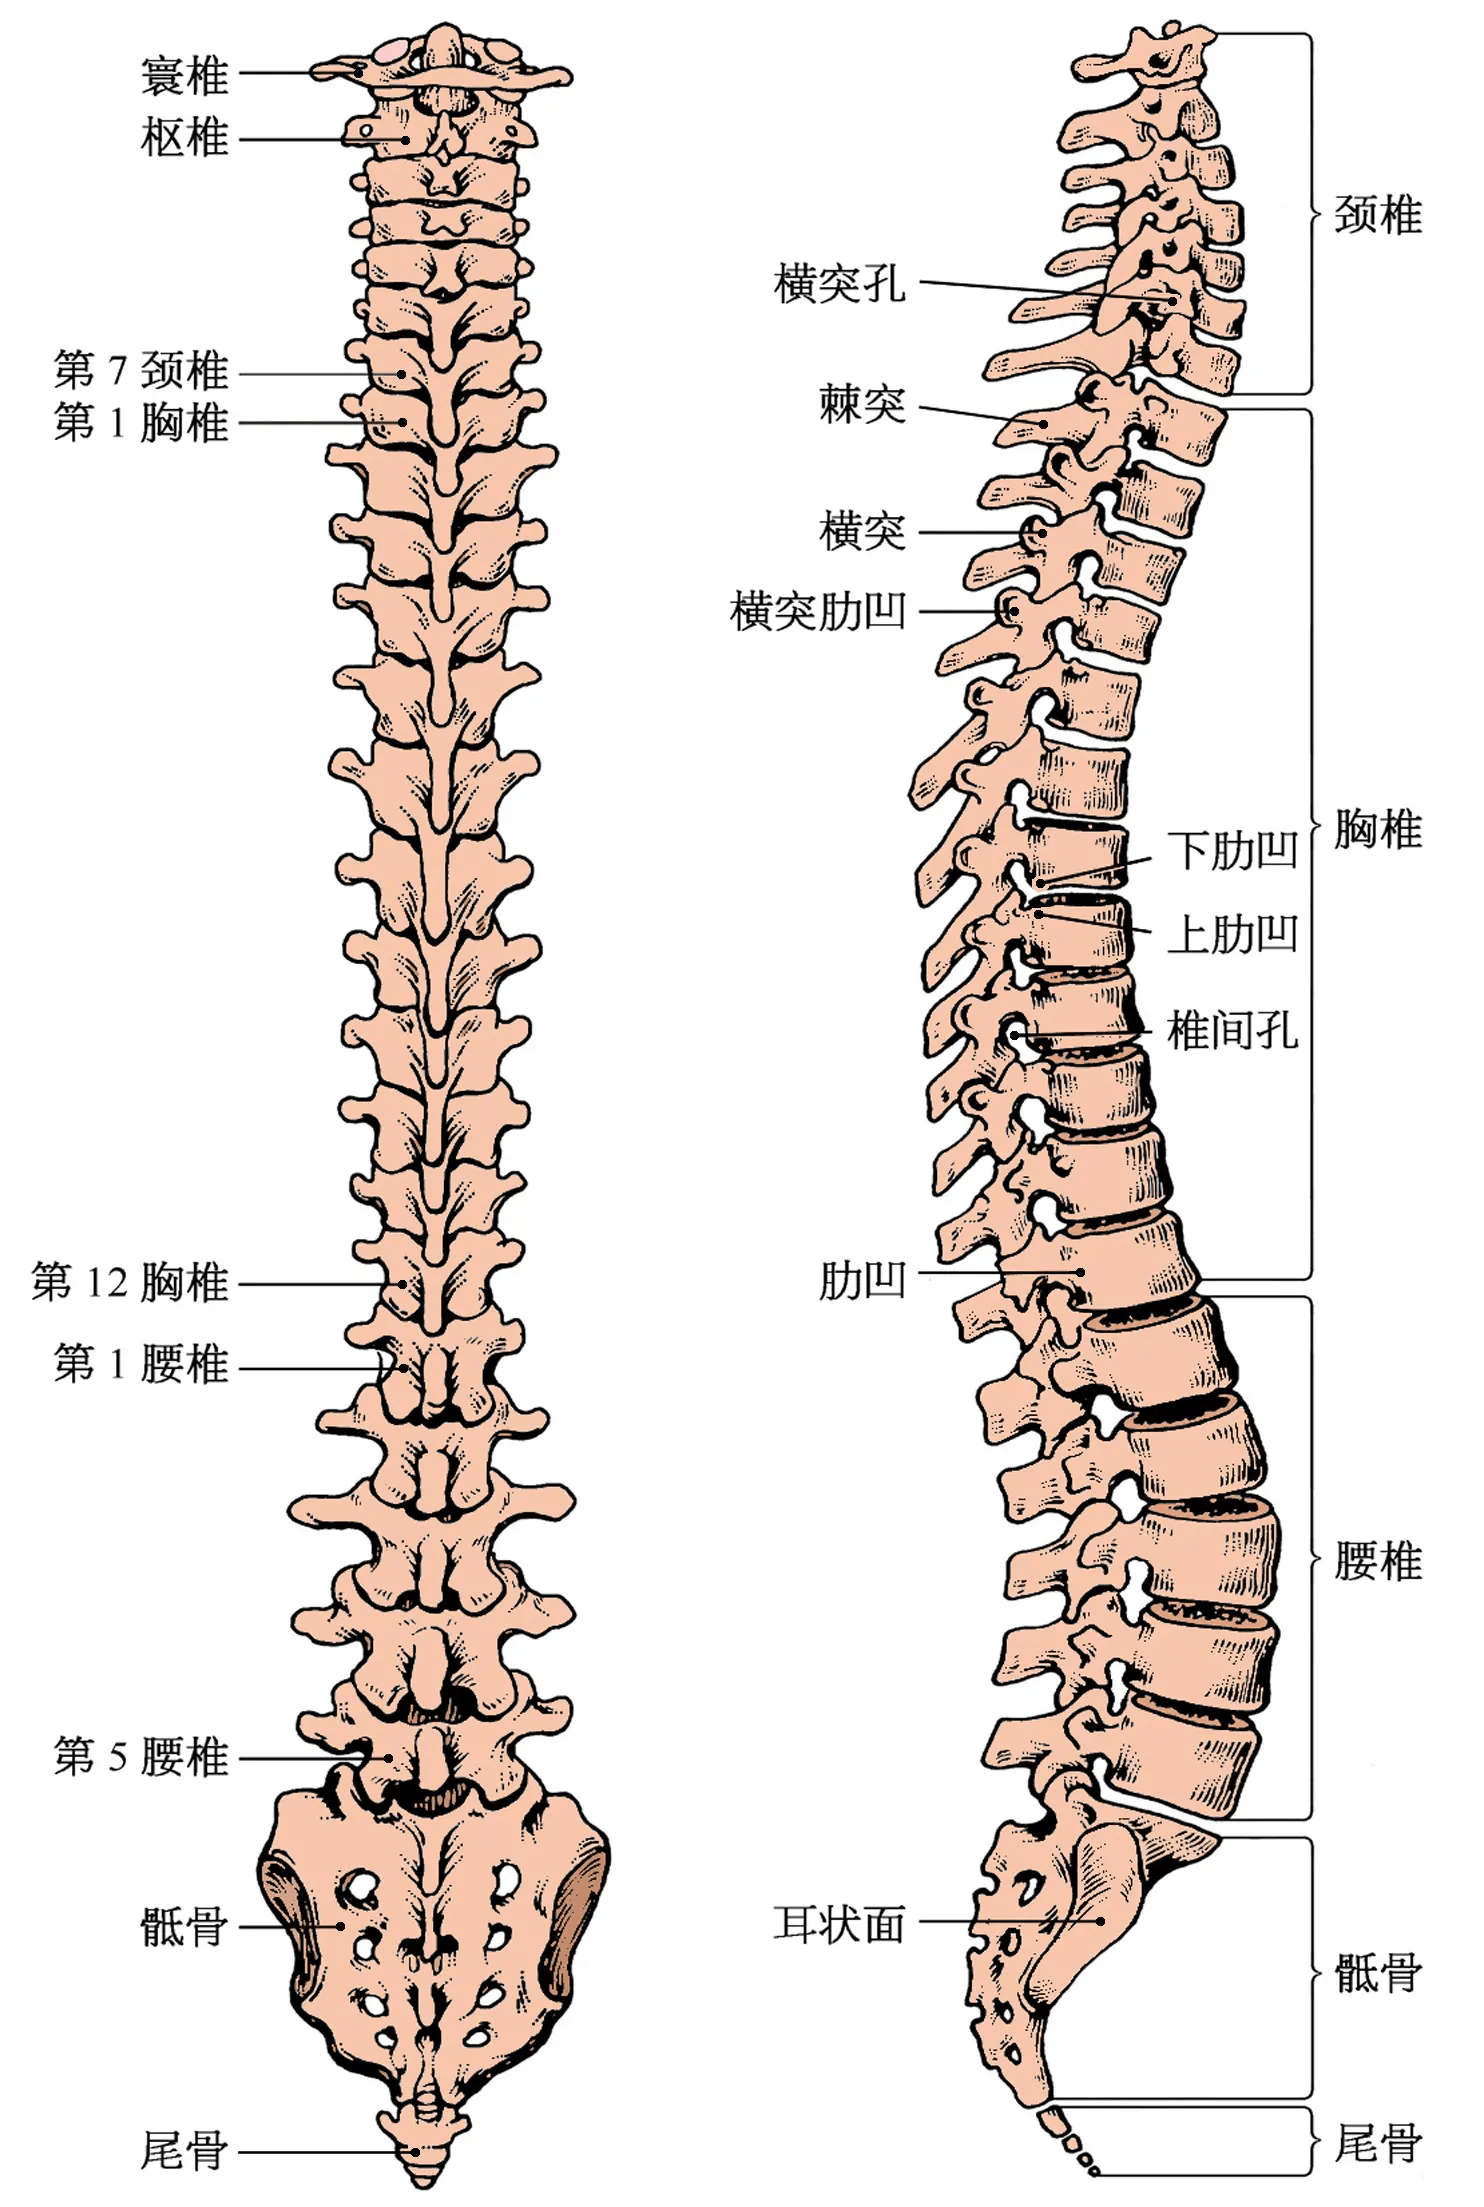 其实,我们人体的脊椎并不是一条直线,而是存在生理弯曲的